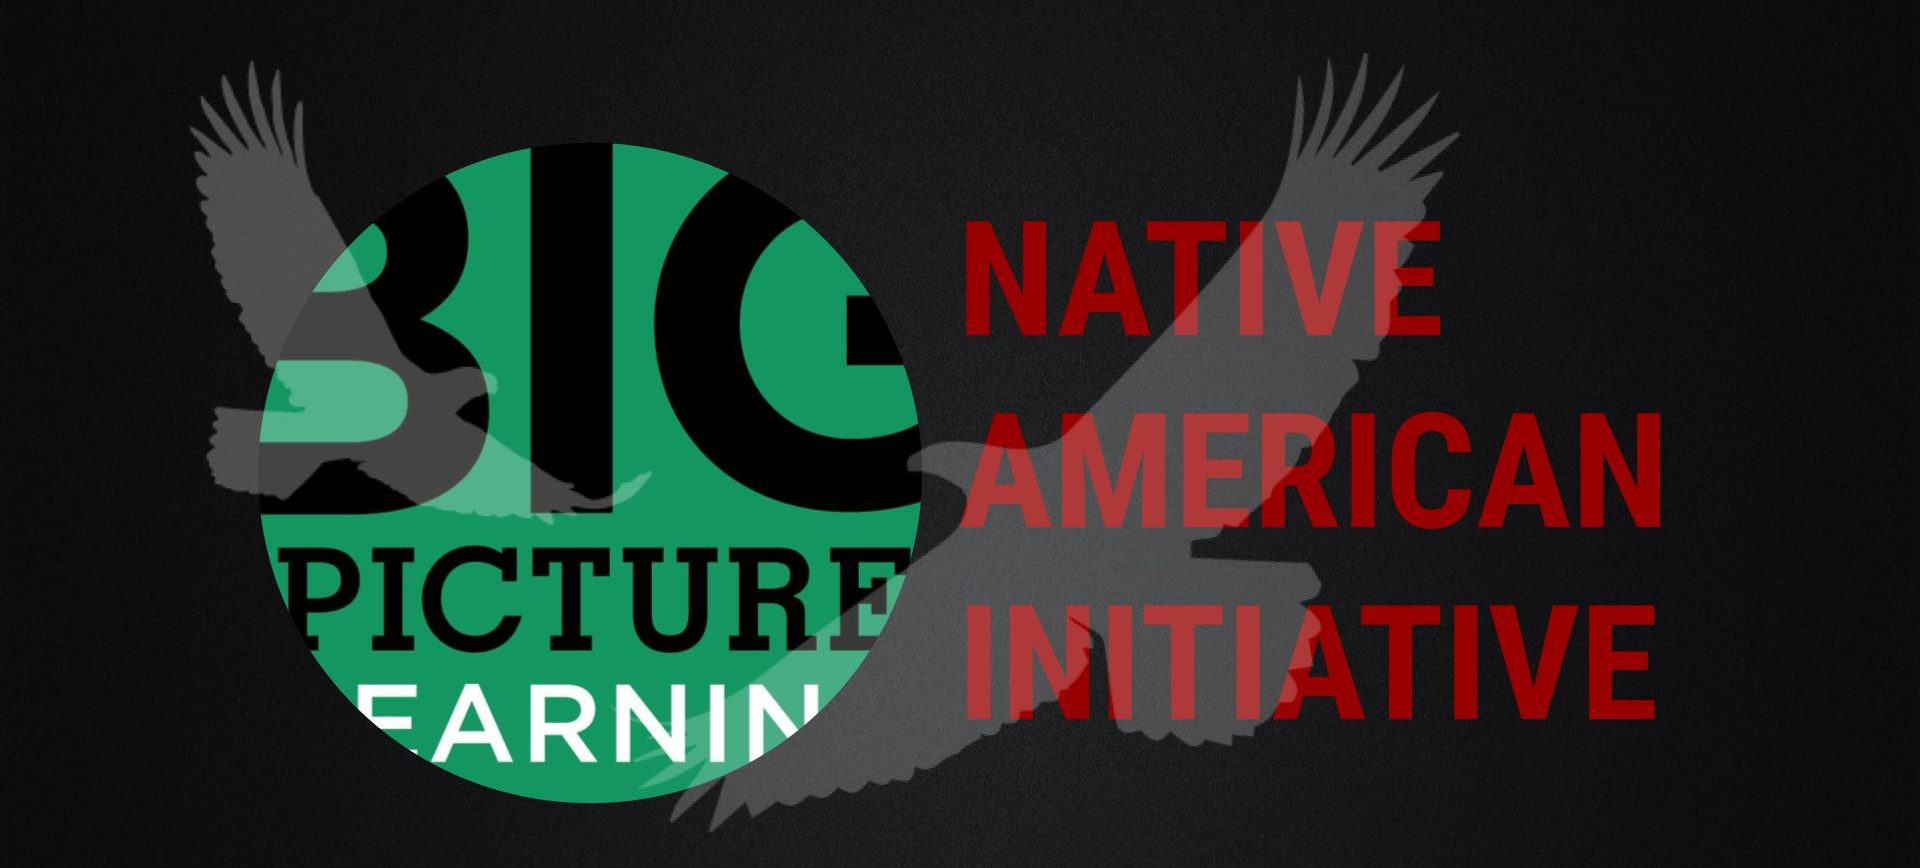 Native American Initiative